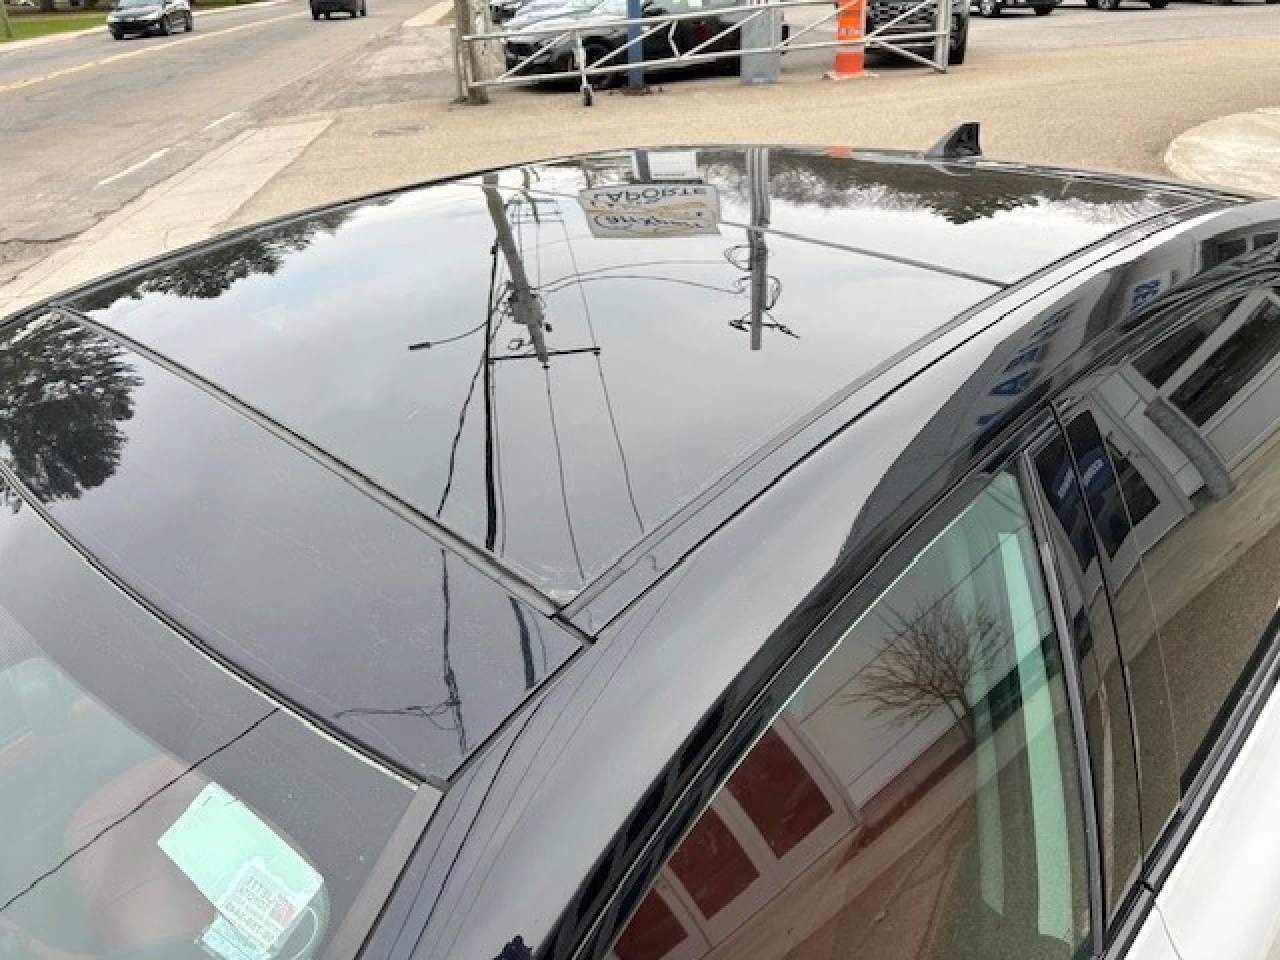 2019 Toyota Camry XSE Main Image